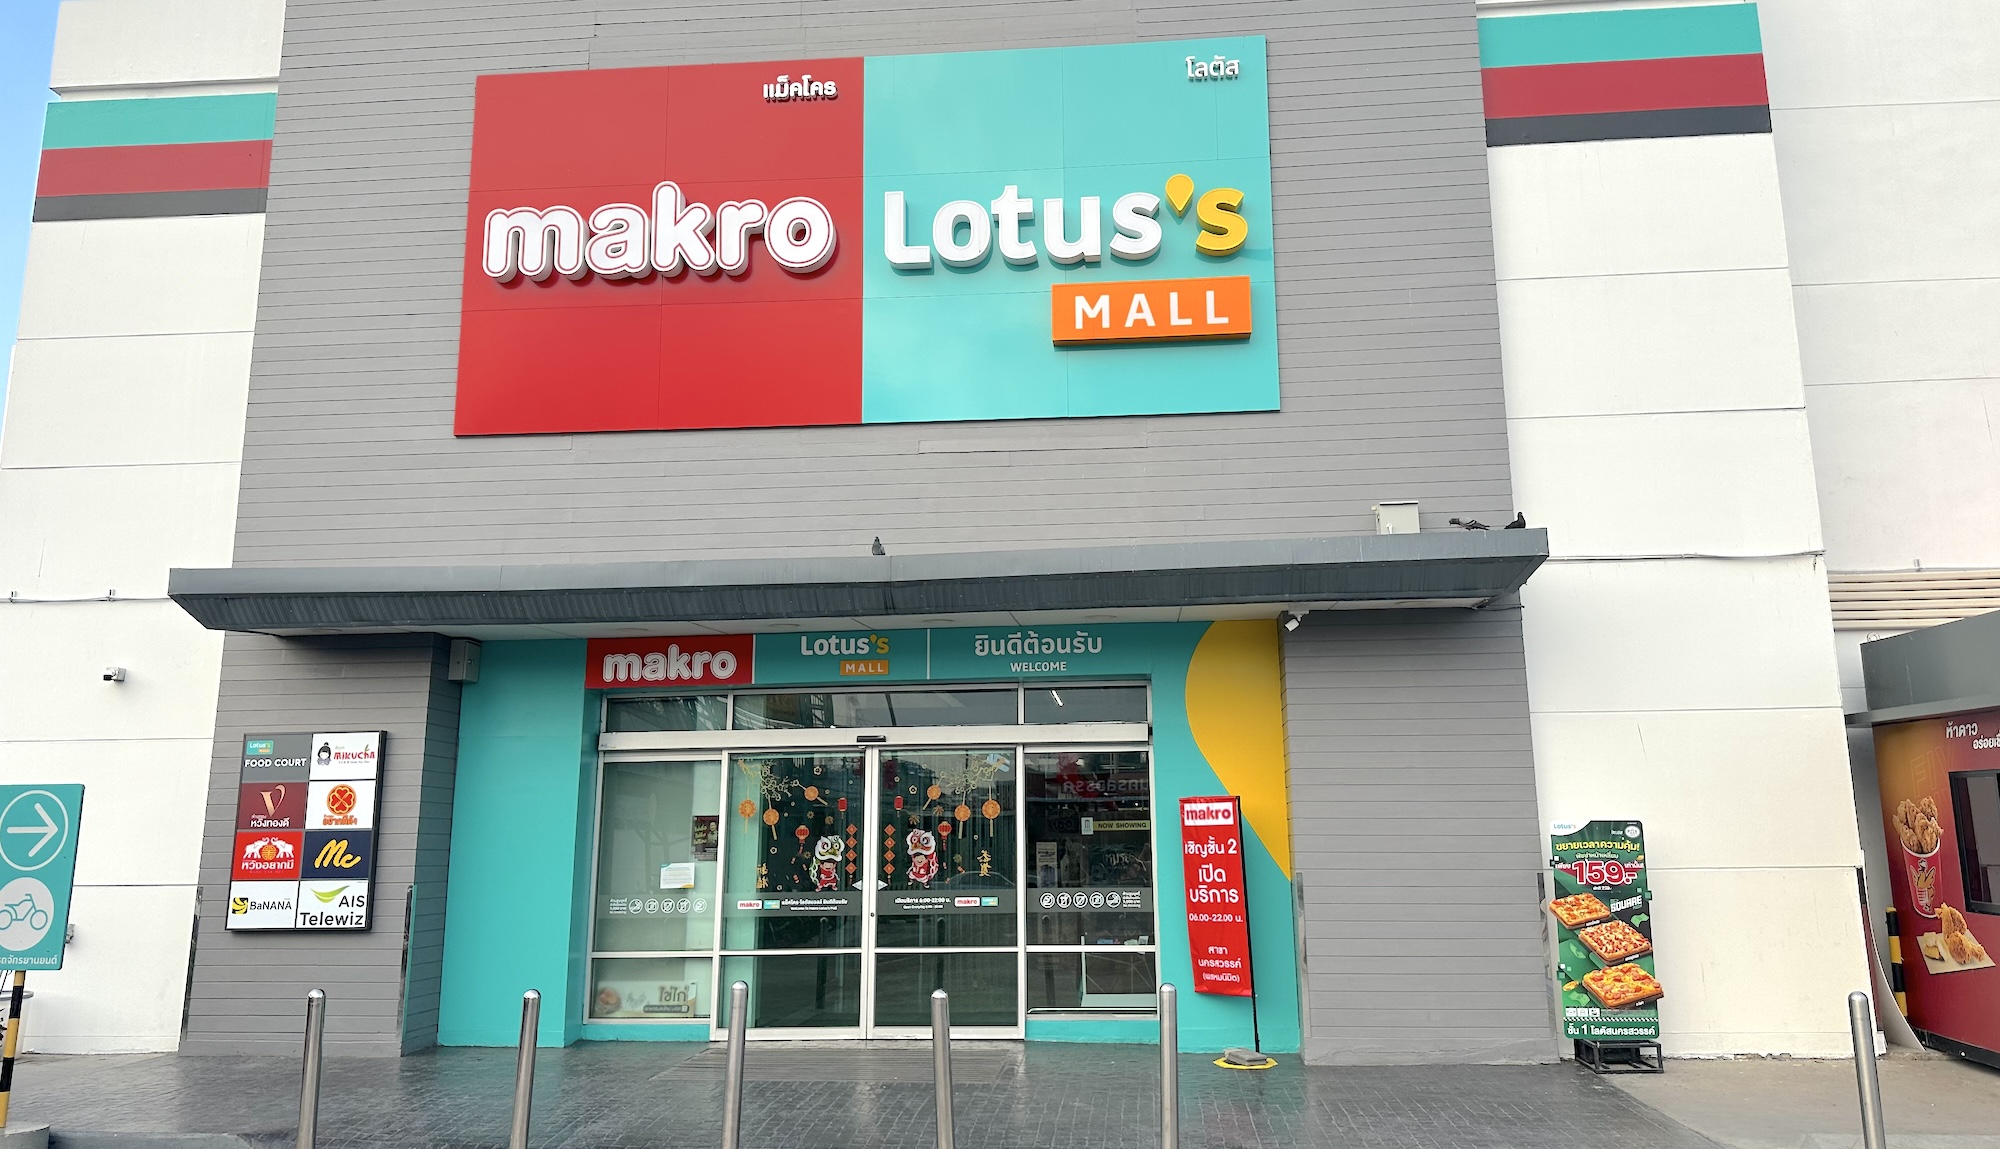 Makro Lotus’s Mall Nakhonsawan | แมคโครโลตัสมอลล์ นครสวรรค์